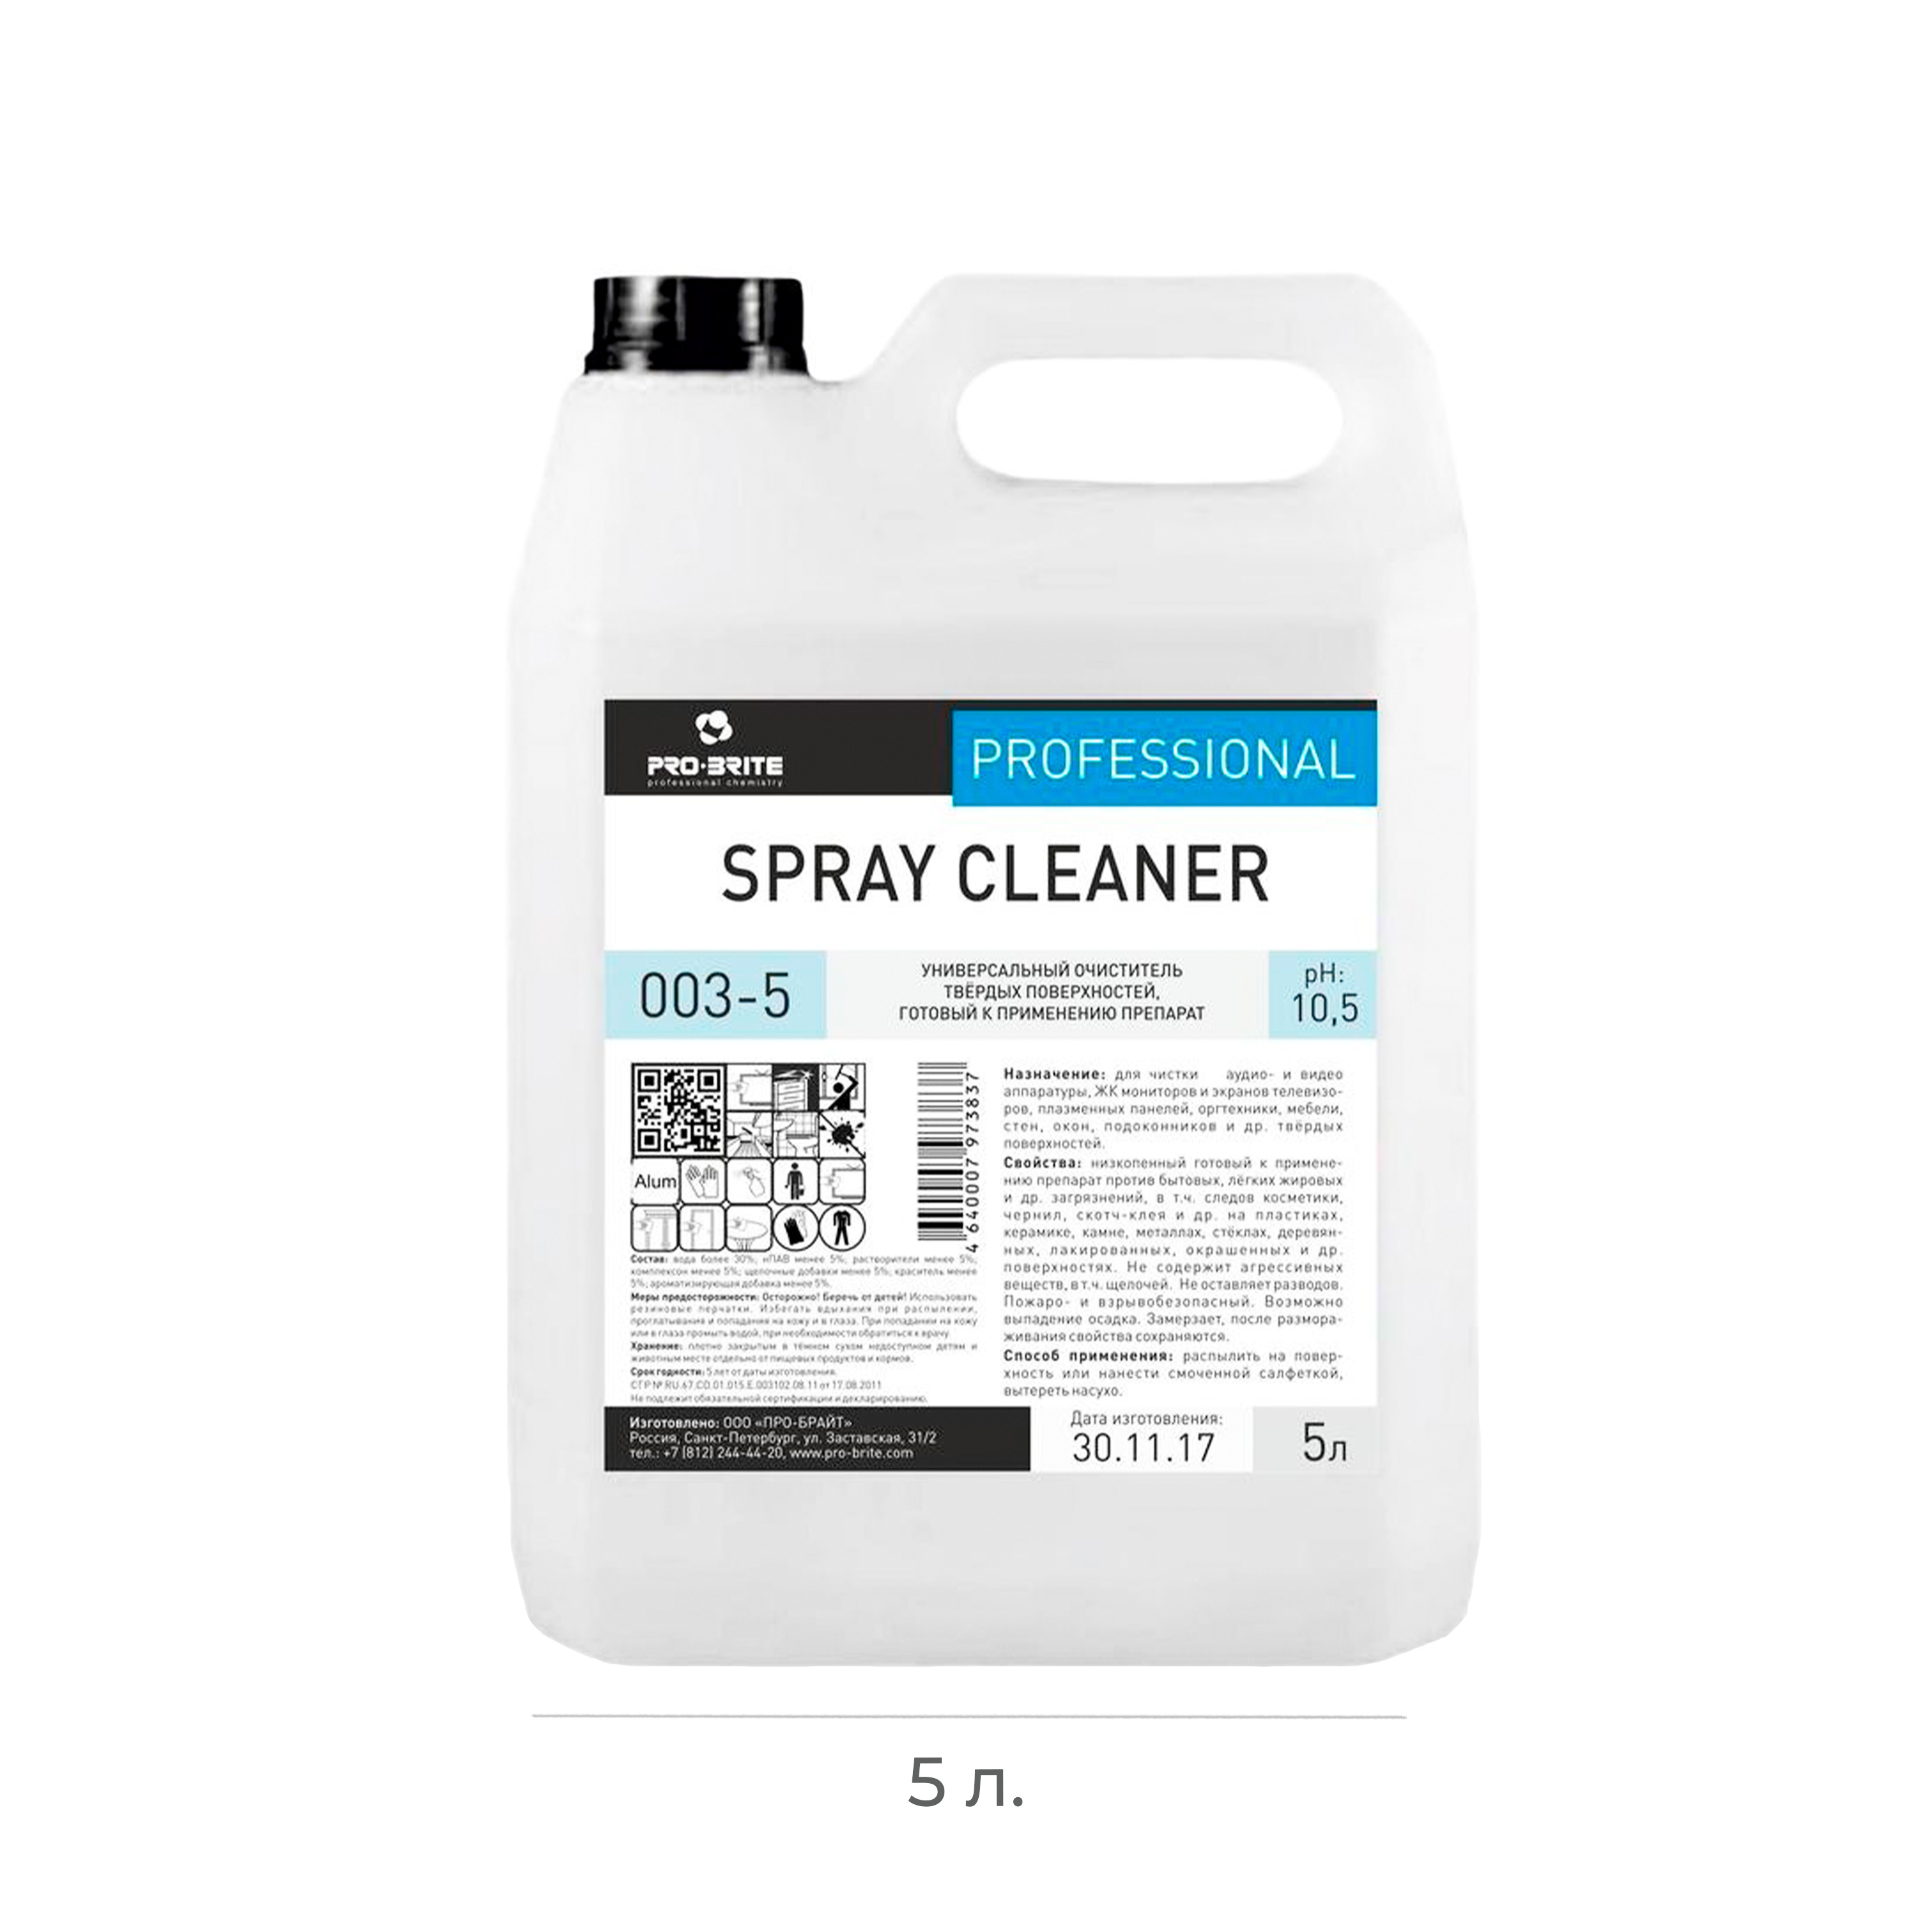 Универсальный очиститель твёрдых поверхностей Pro-brite Spray Cleaner 5л 003-5 (4) 